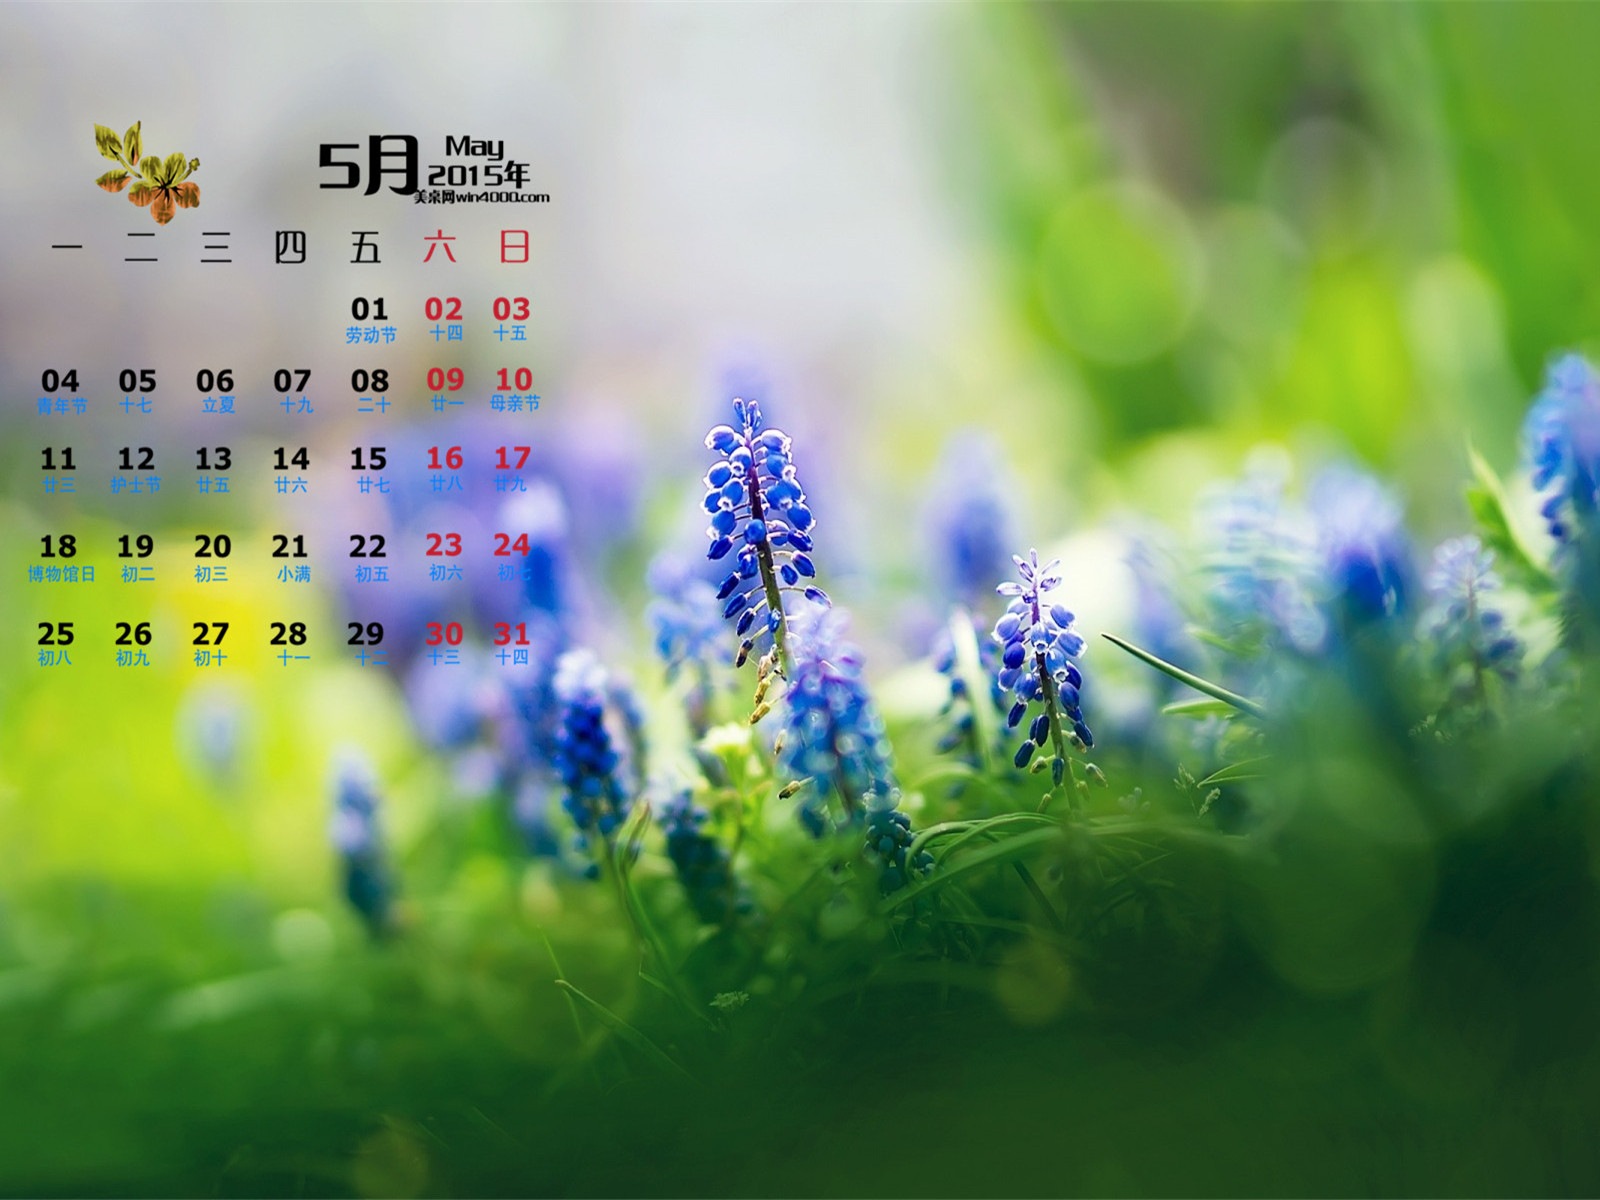 Mai 2015 Kalender Wallpaper (1) #16 - 1600x1200